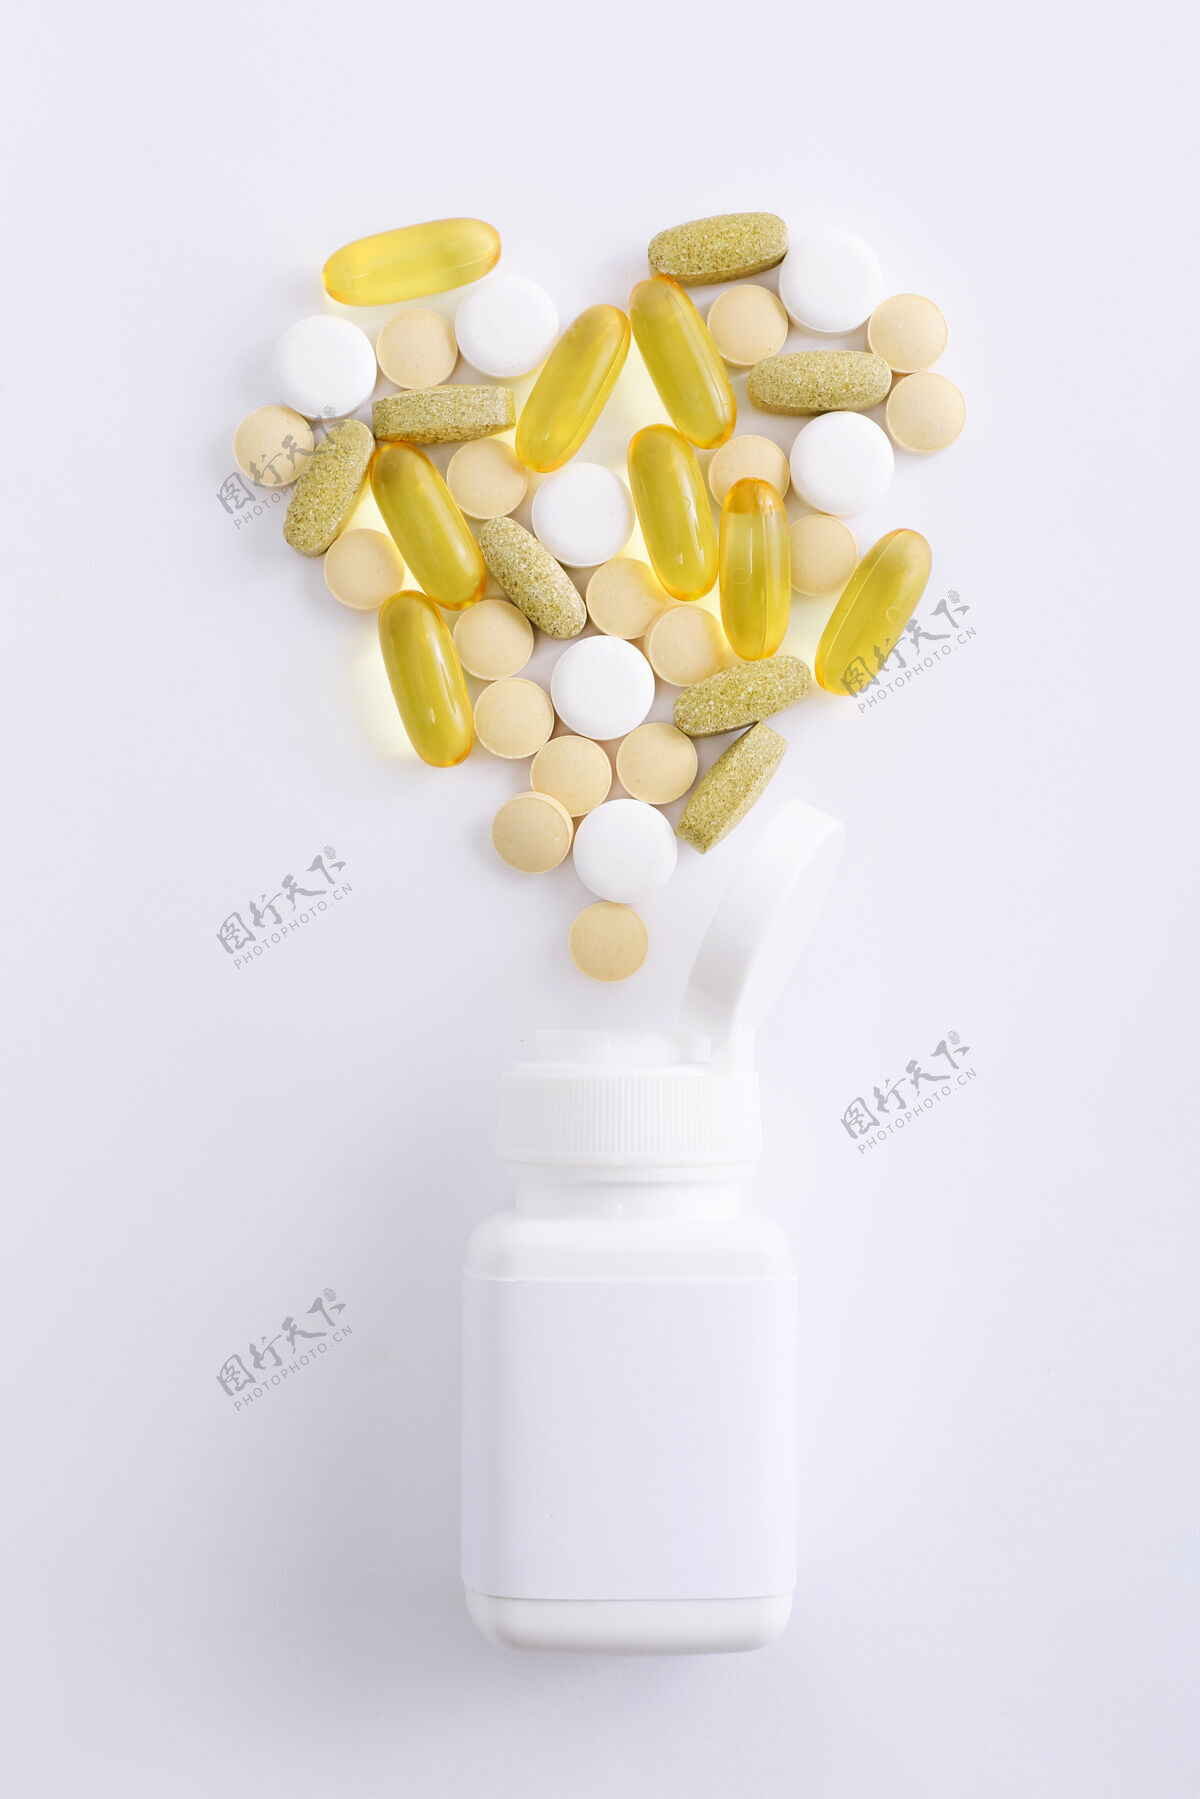 片剂各种药丸 片剂和胶囊上都有白色维生素治疗健康